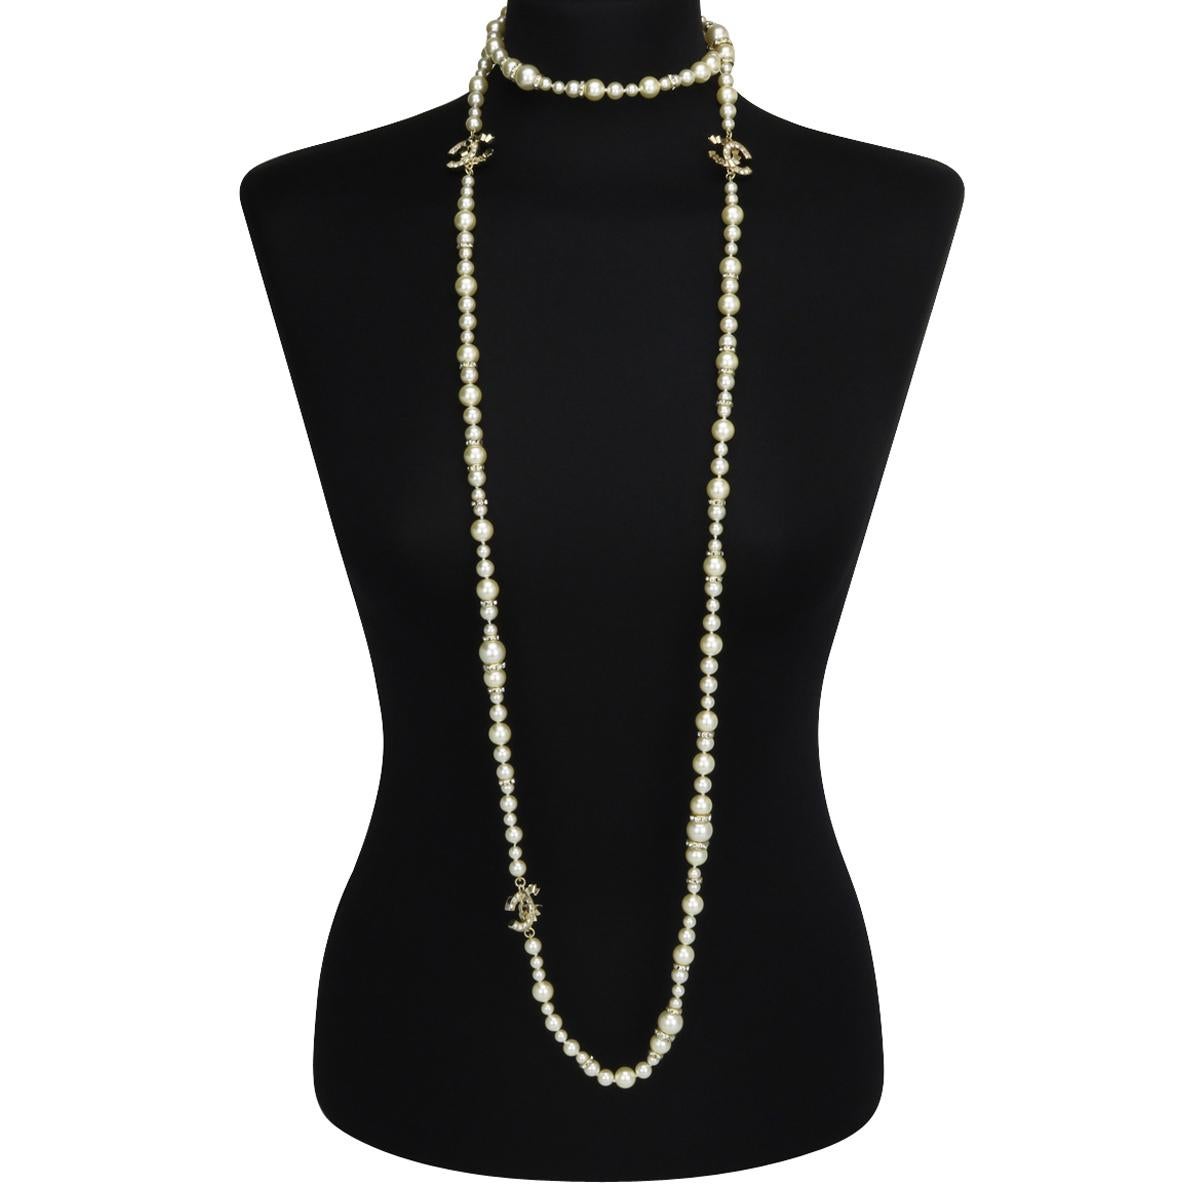 Authentische CHANEL CC Faux Perlen Kristall Perlen Gold Lange Halskette 2021 (P21 C).

Diese atemberaubende lange Halskette ist in ausgezeichnetem Zustand.

Es besteht aus exquisiten Barockperlen in verschiedenen Größen, mit großen,